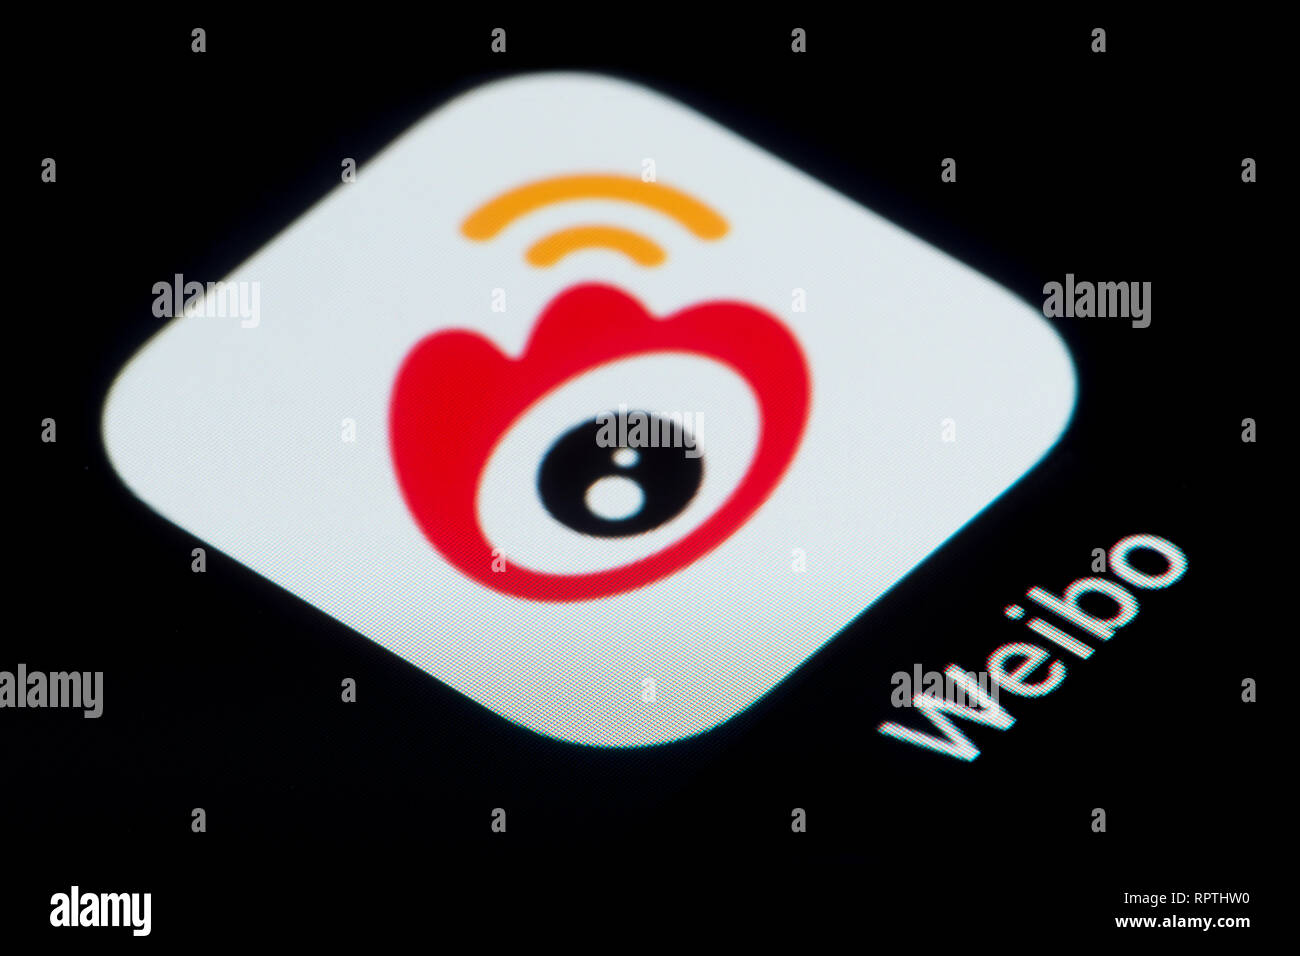 Un gros plan de l'icône de l'application Weibo, comme on le voit sur l'écran d'un téléphone intelligent (usage éditorial uniquement) Banque D'Images